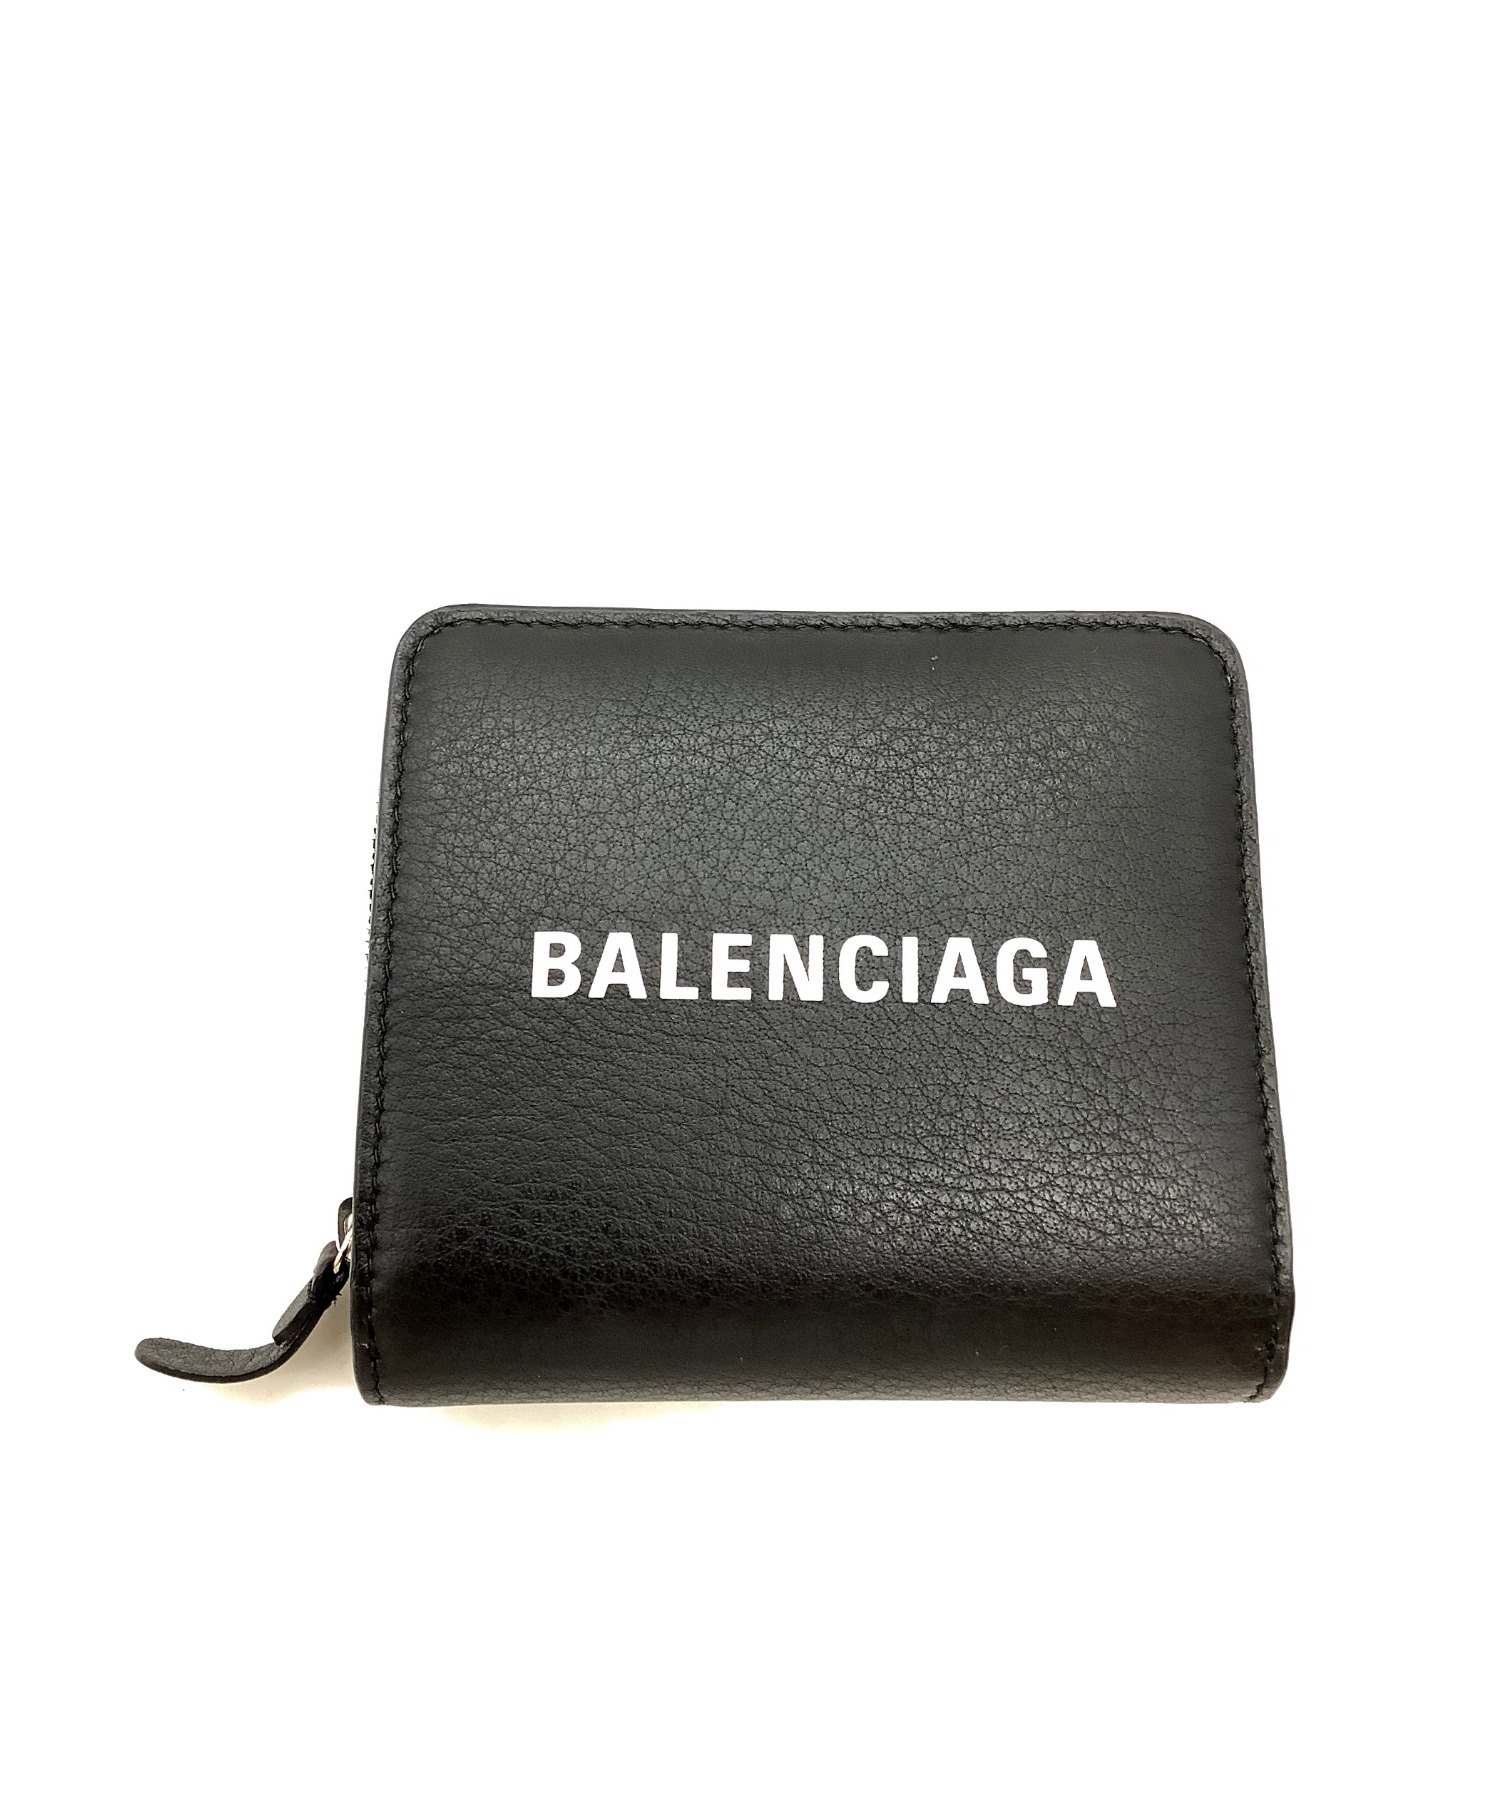 【訳あり特価】BALENCIAGA バレンシアガ 二つ折り財布